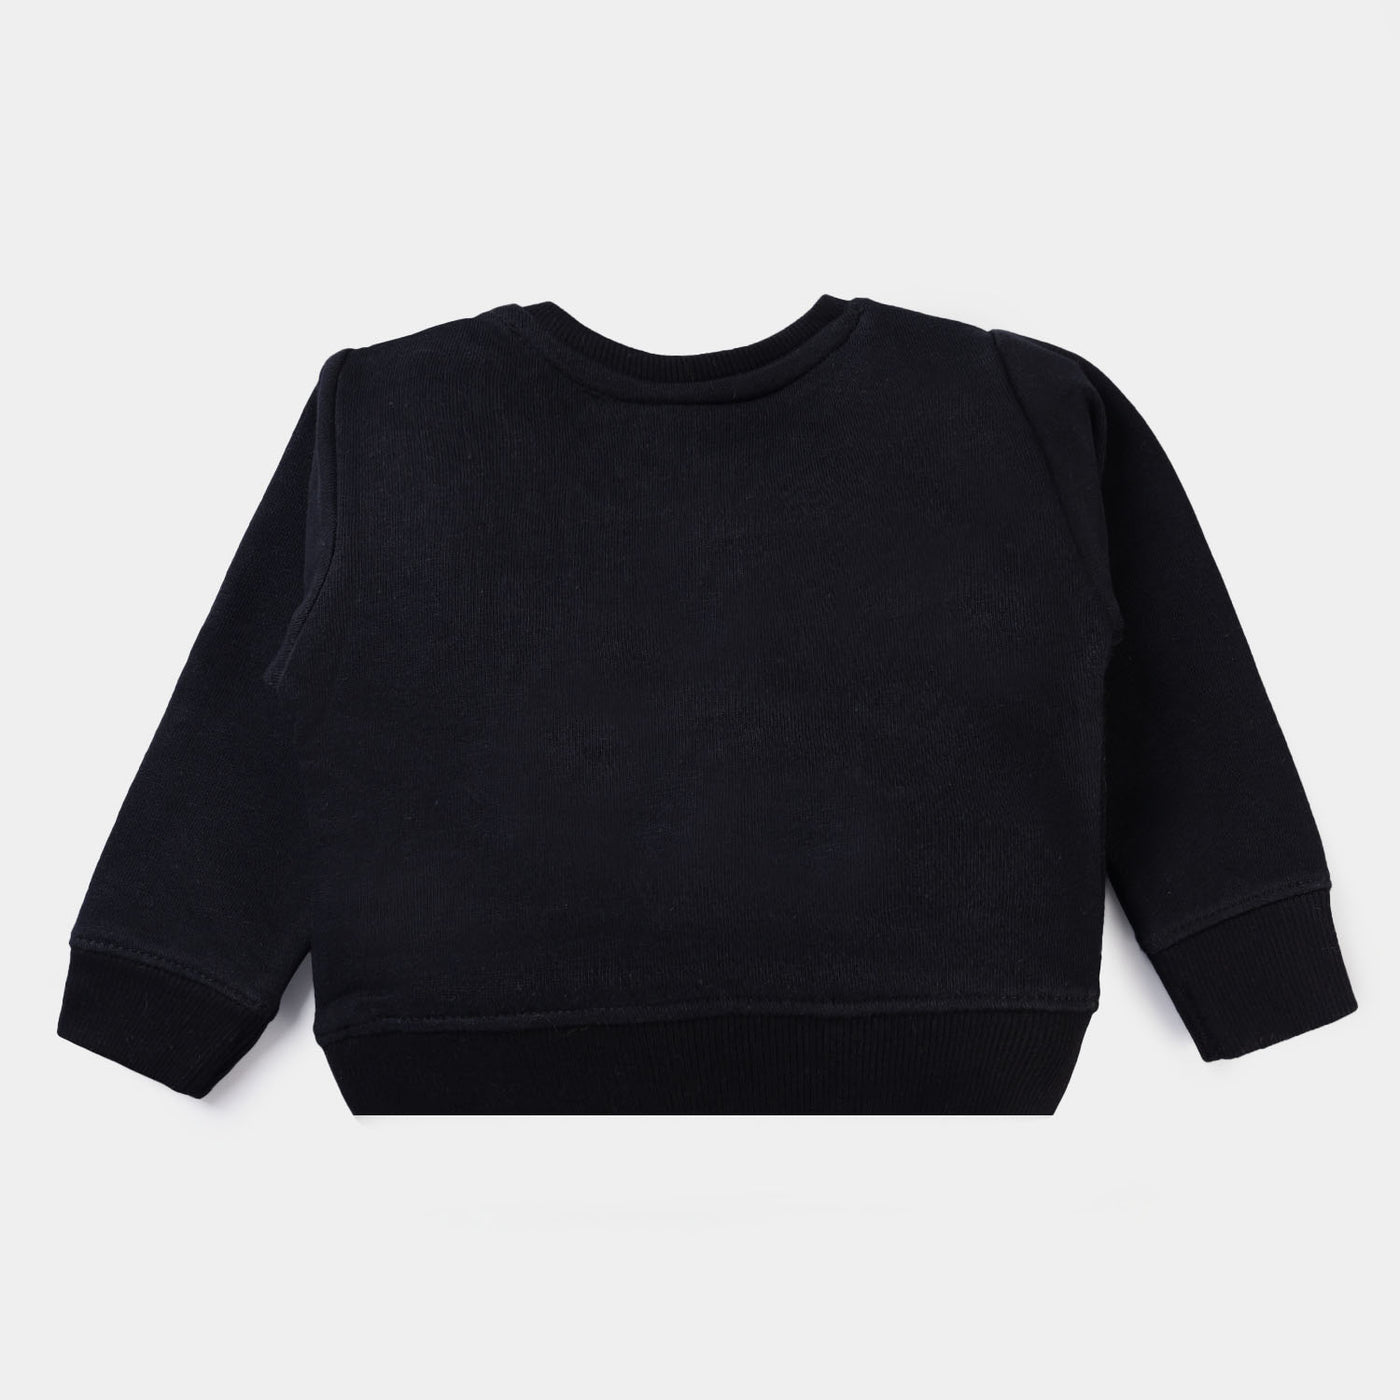 Infant Boys Fleece Sweatshirt Character -BLACK